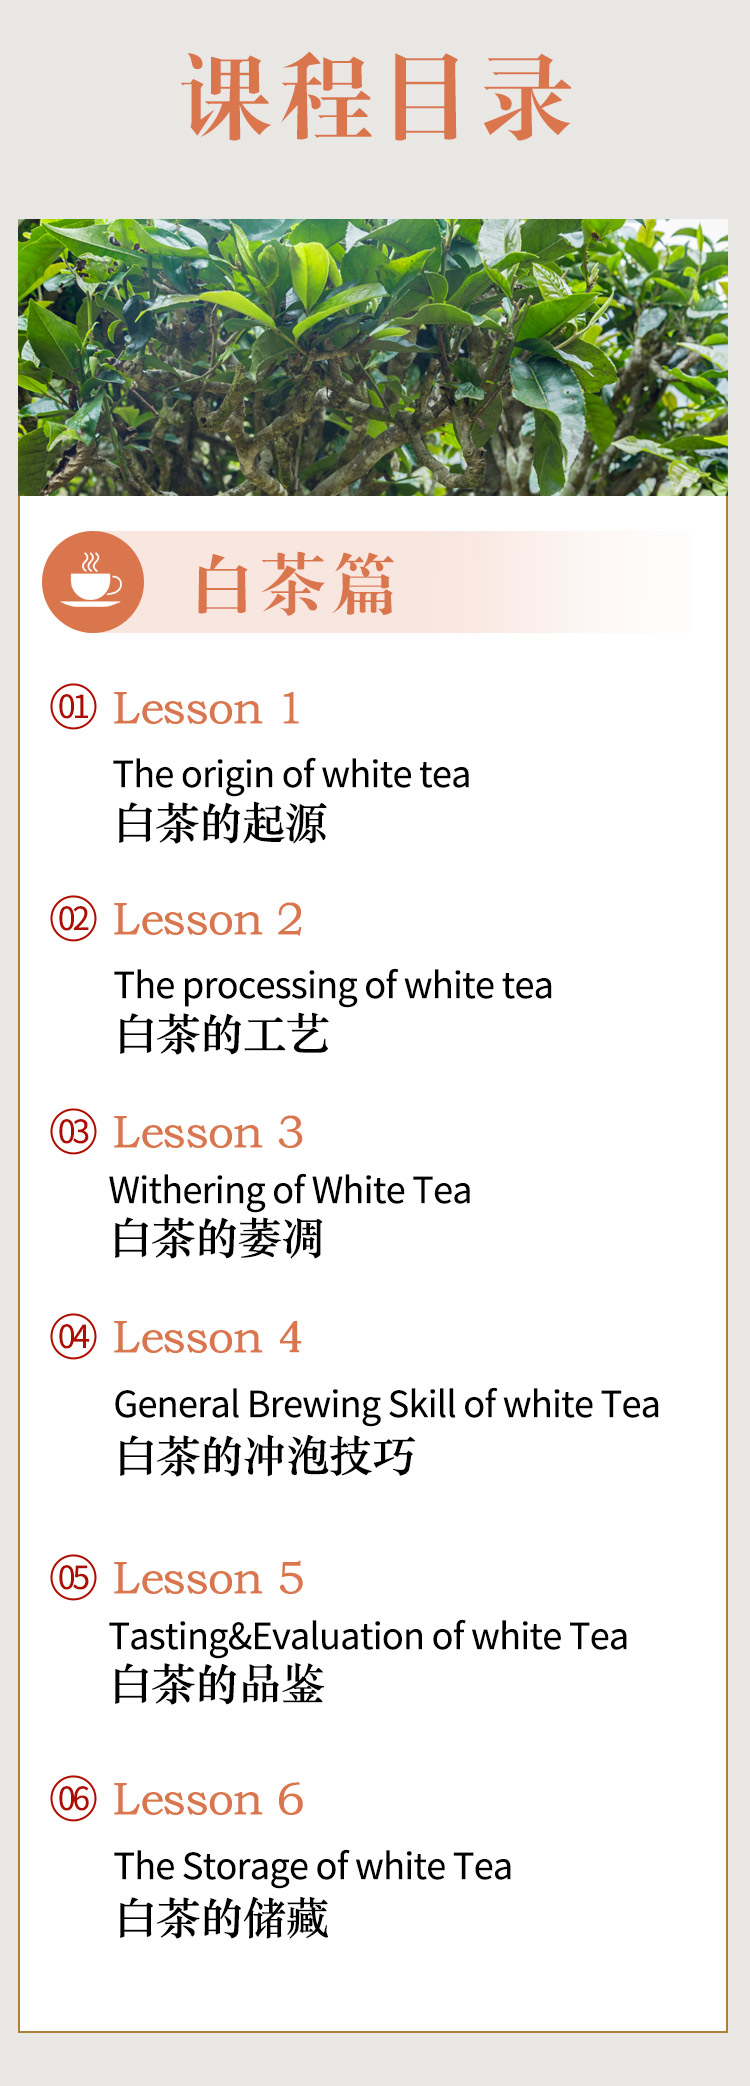 葡言茶语-白茶_05